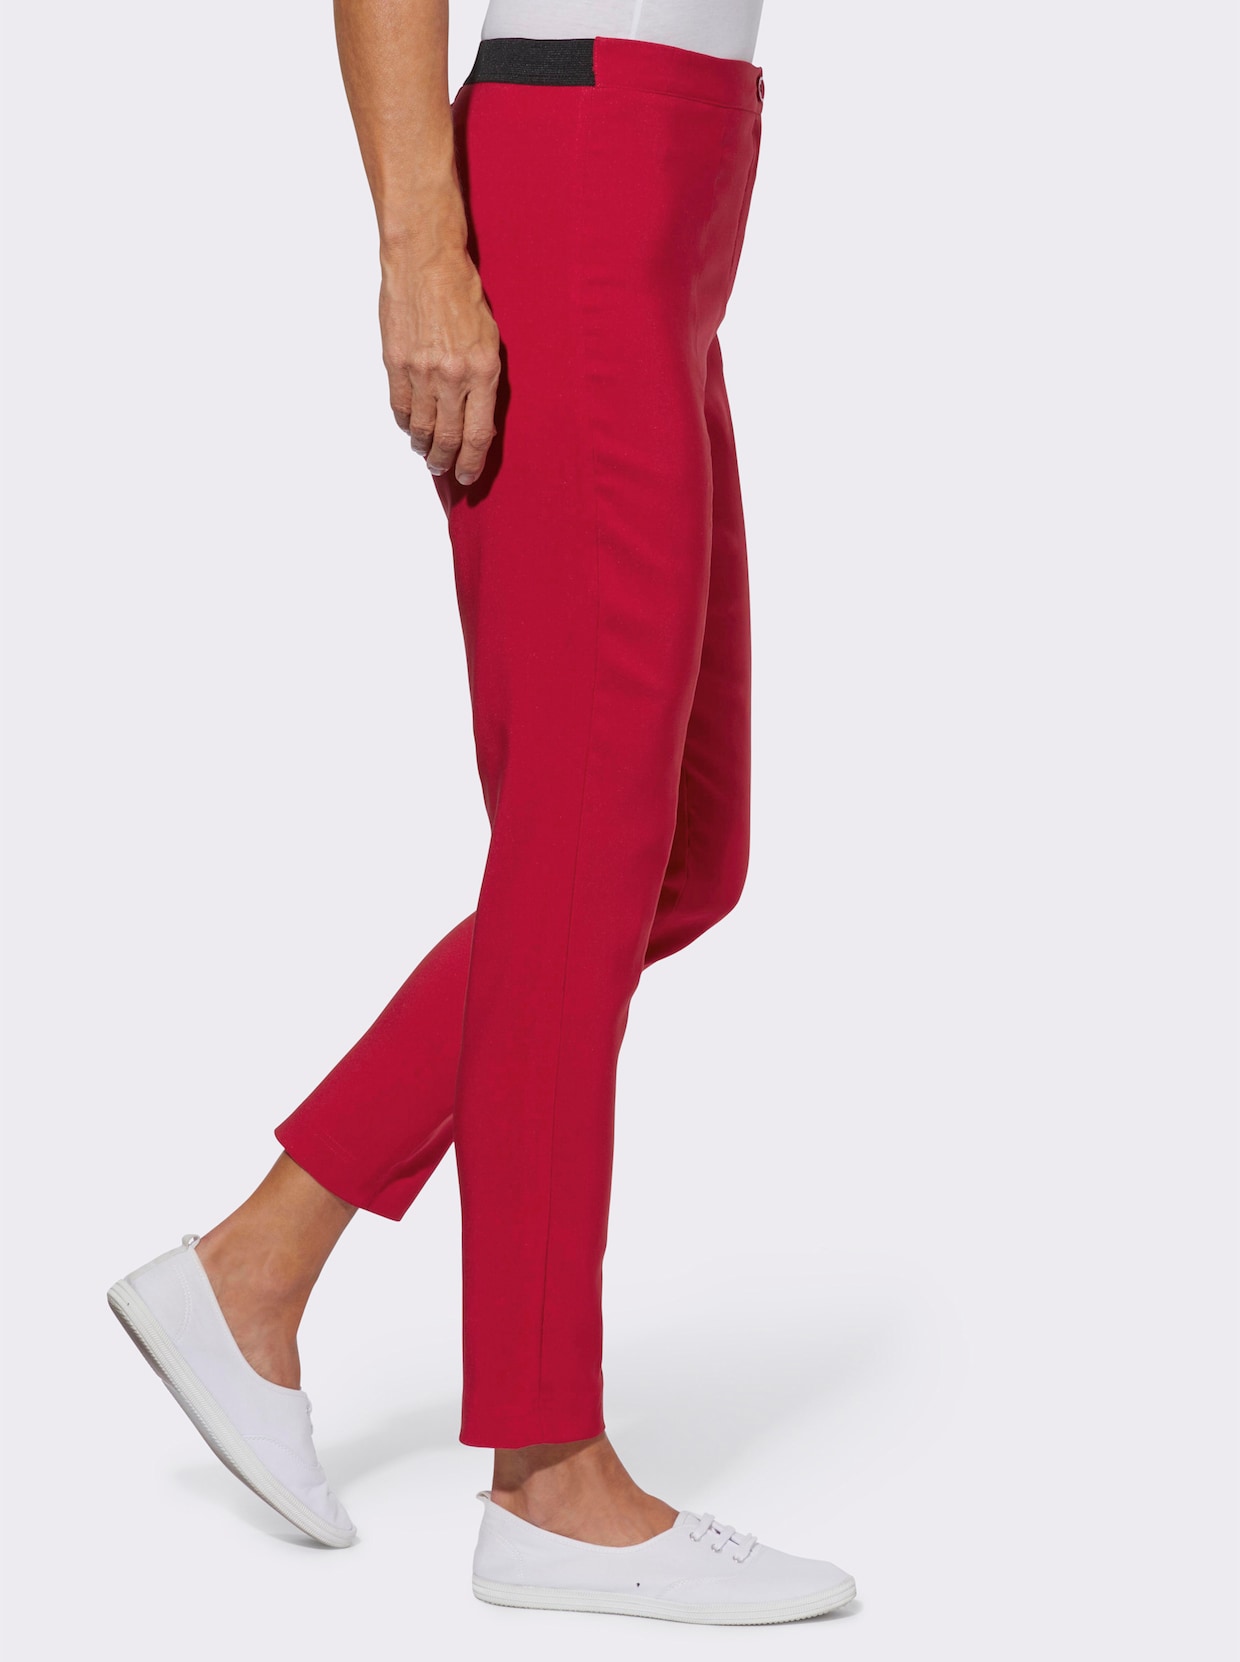 Bengalínové nohavice - červená